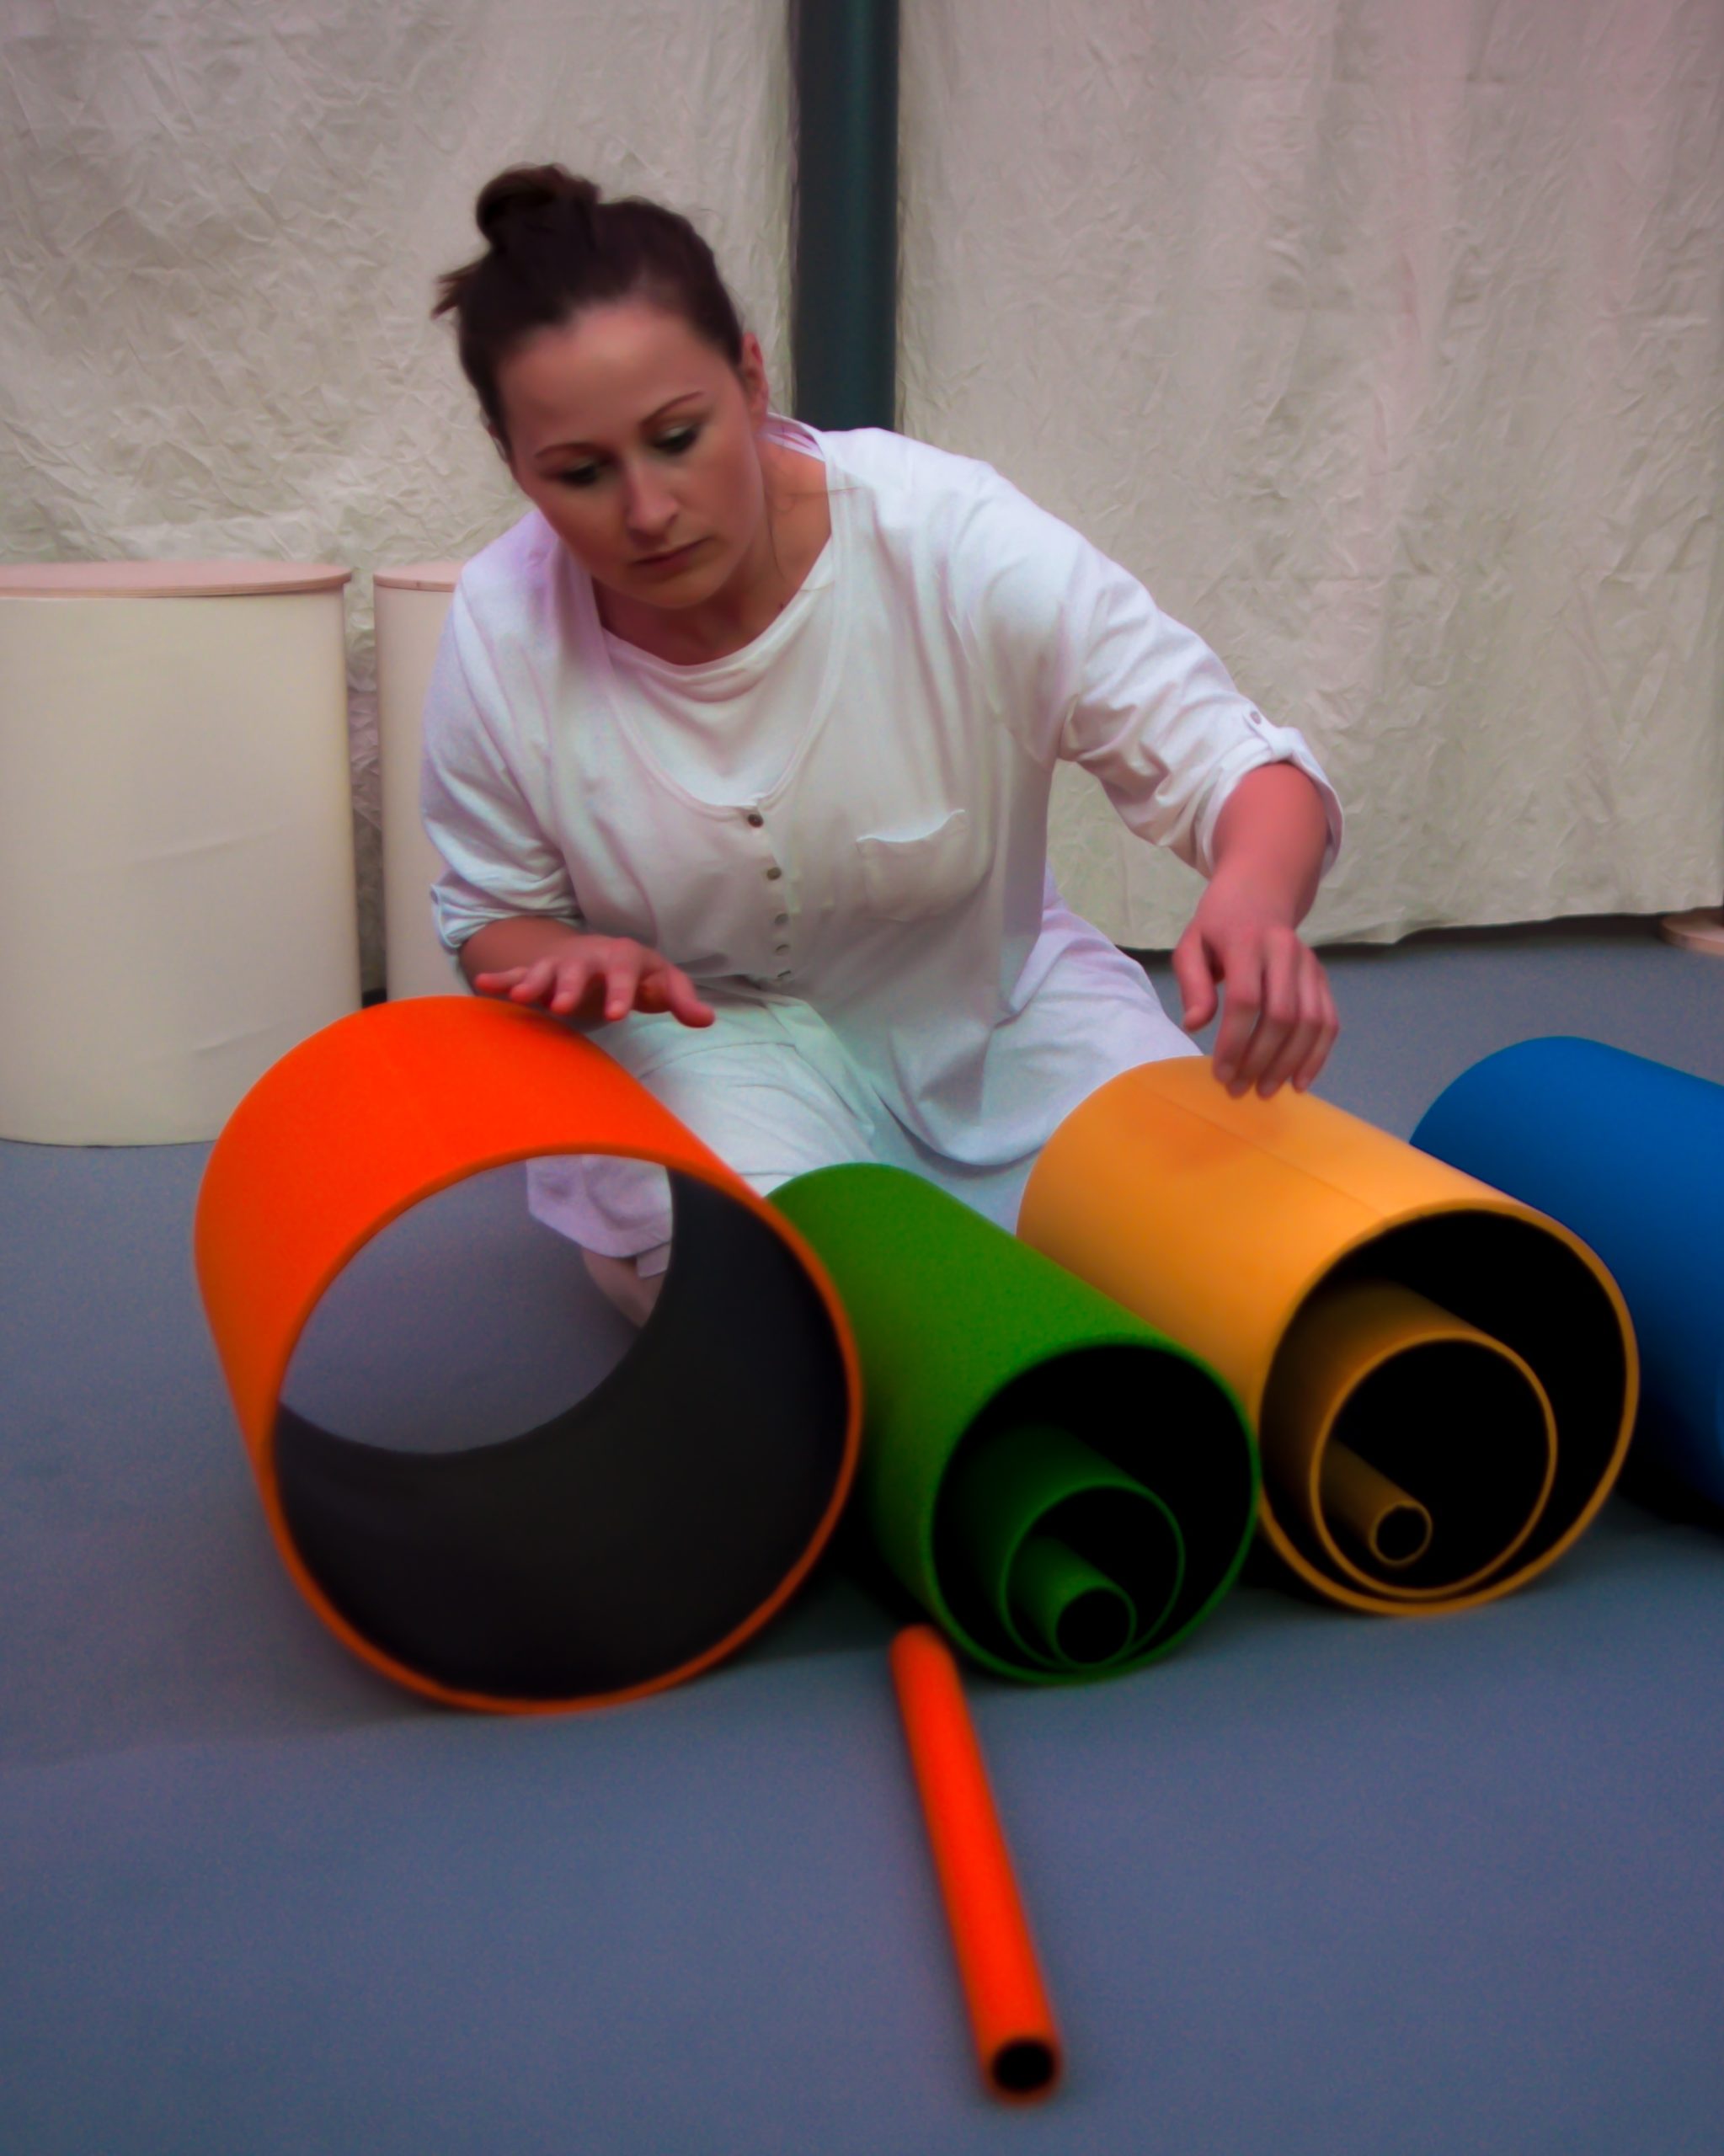 Na zdjęciu widać aktorkę kucającą nad kolorowymi tubami o różnych wielkościach, ułożonymi w jednej lini. 